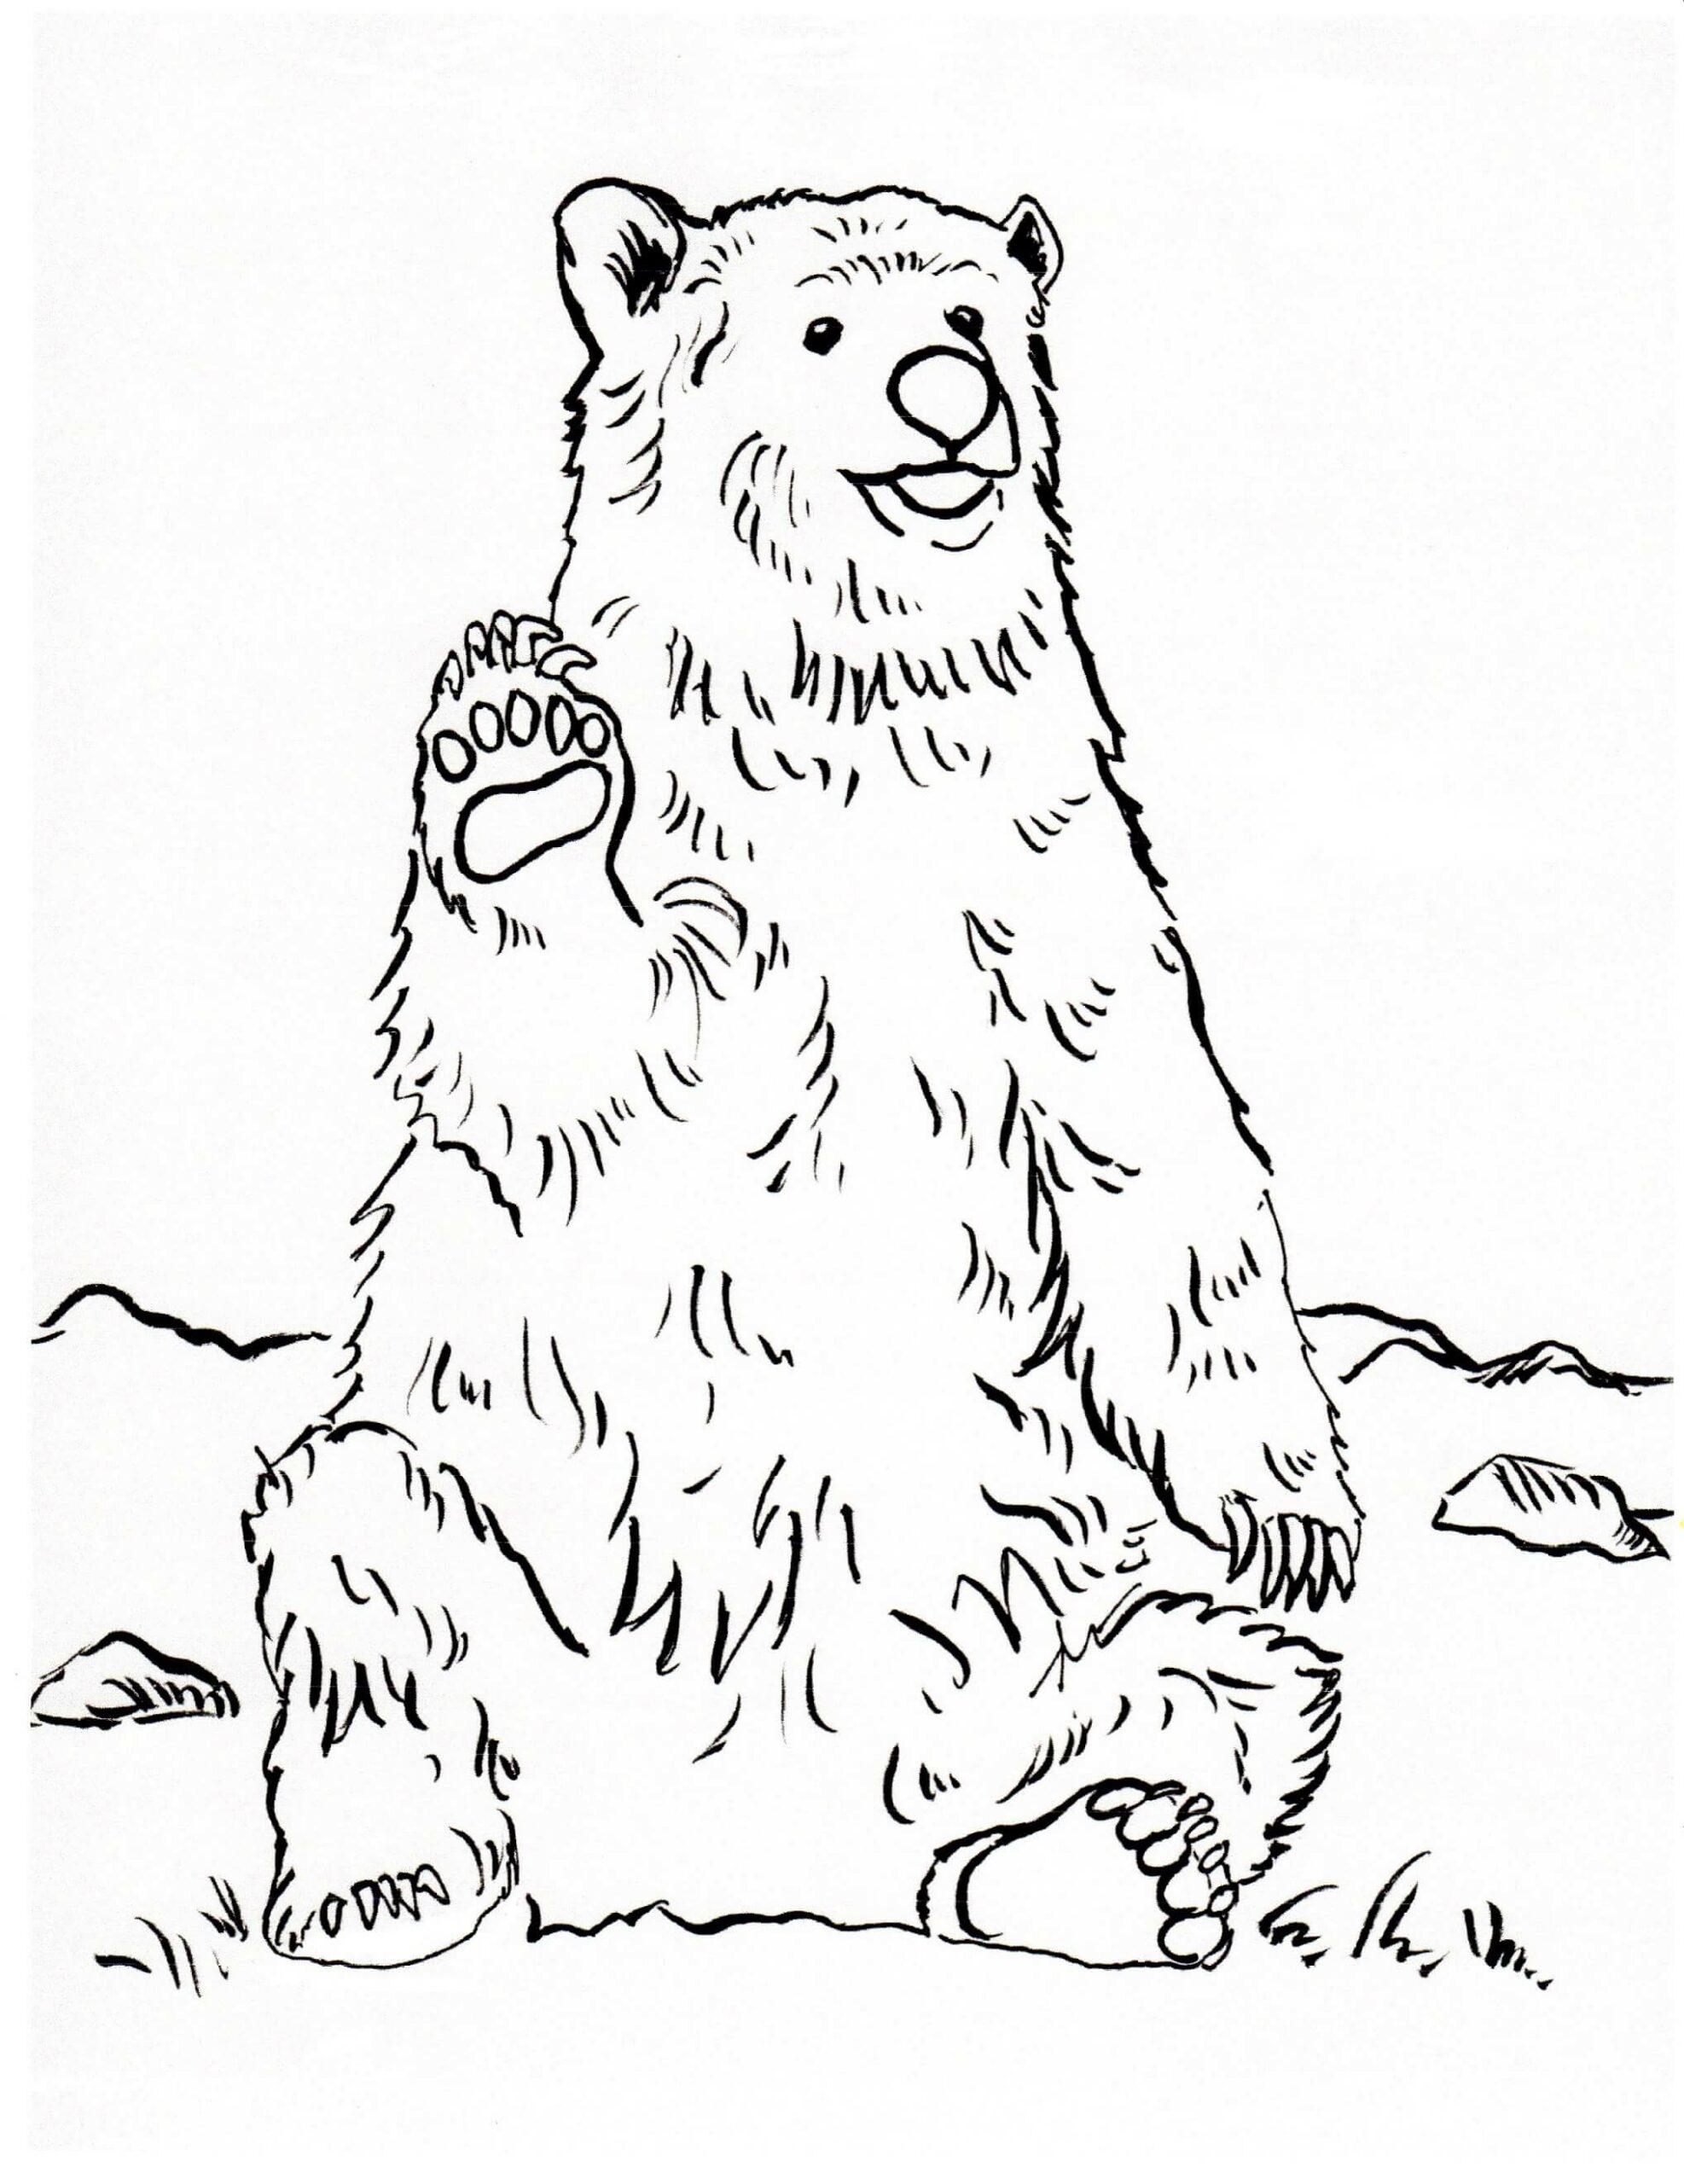 Grizzly Bären sitzend